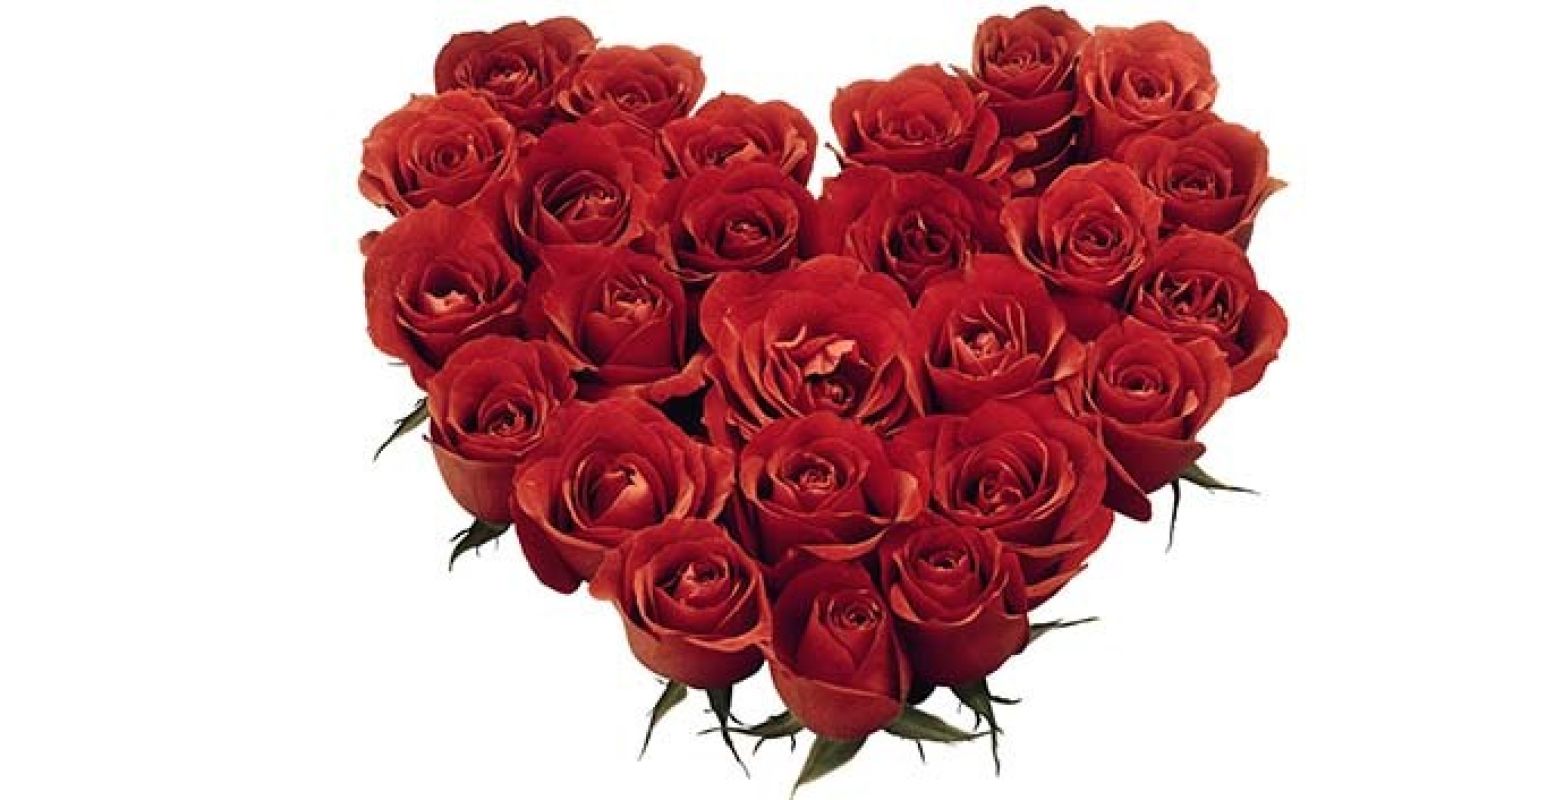 Geen zin om weer rozen te geven? Doe samen iets leuks op Valentijnsdag! Foto: muZIEum